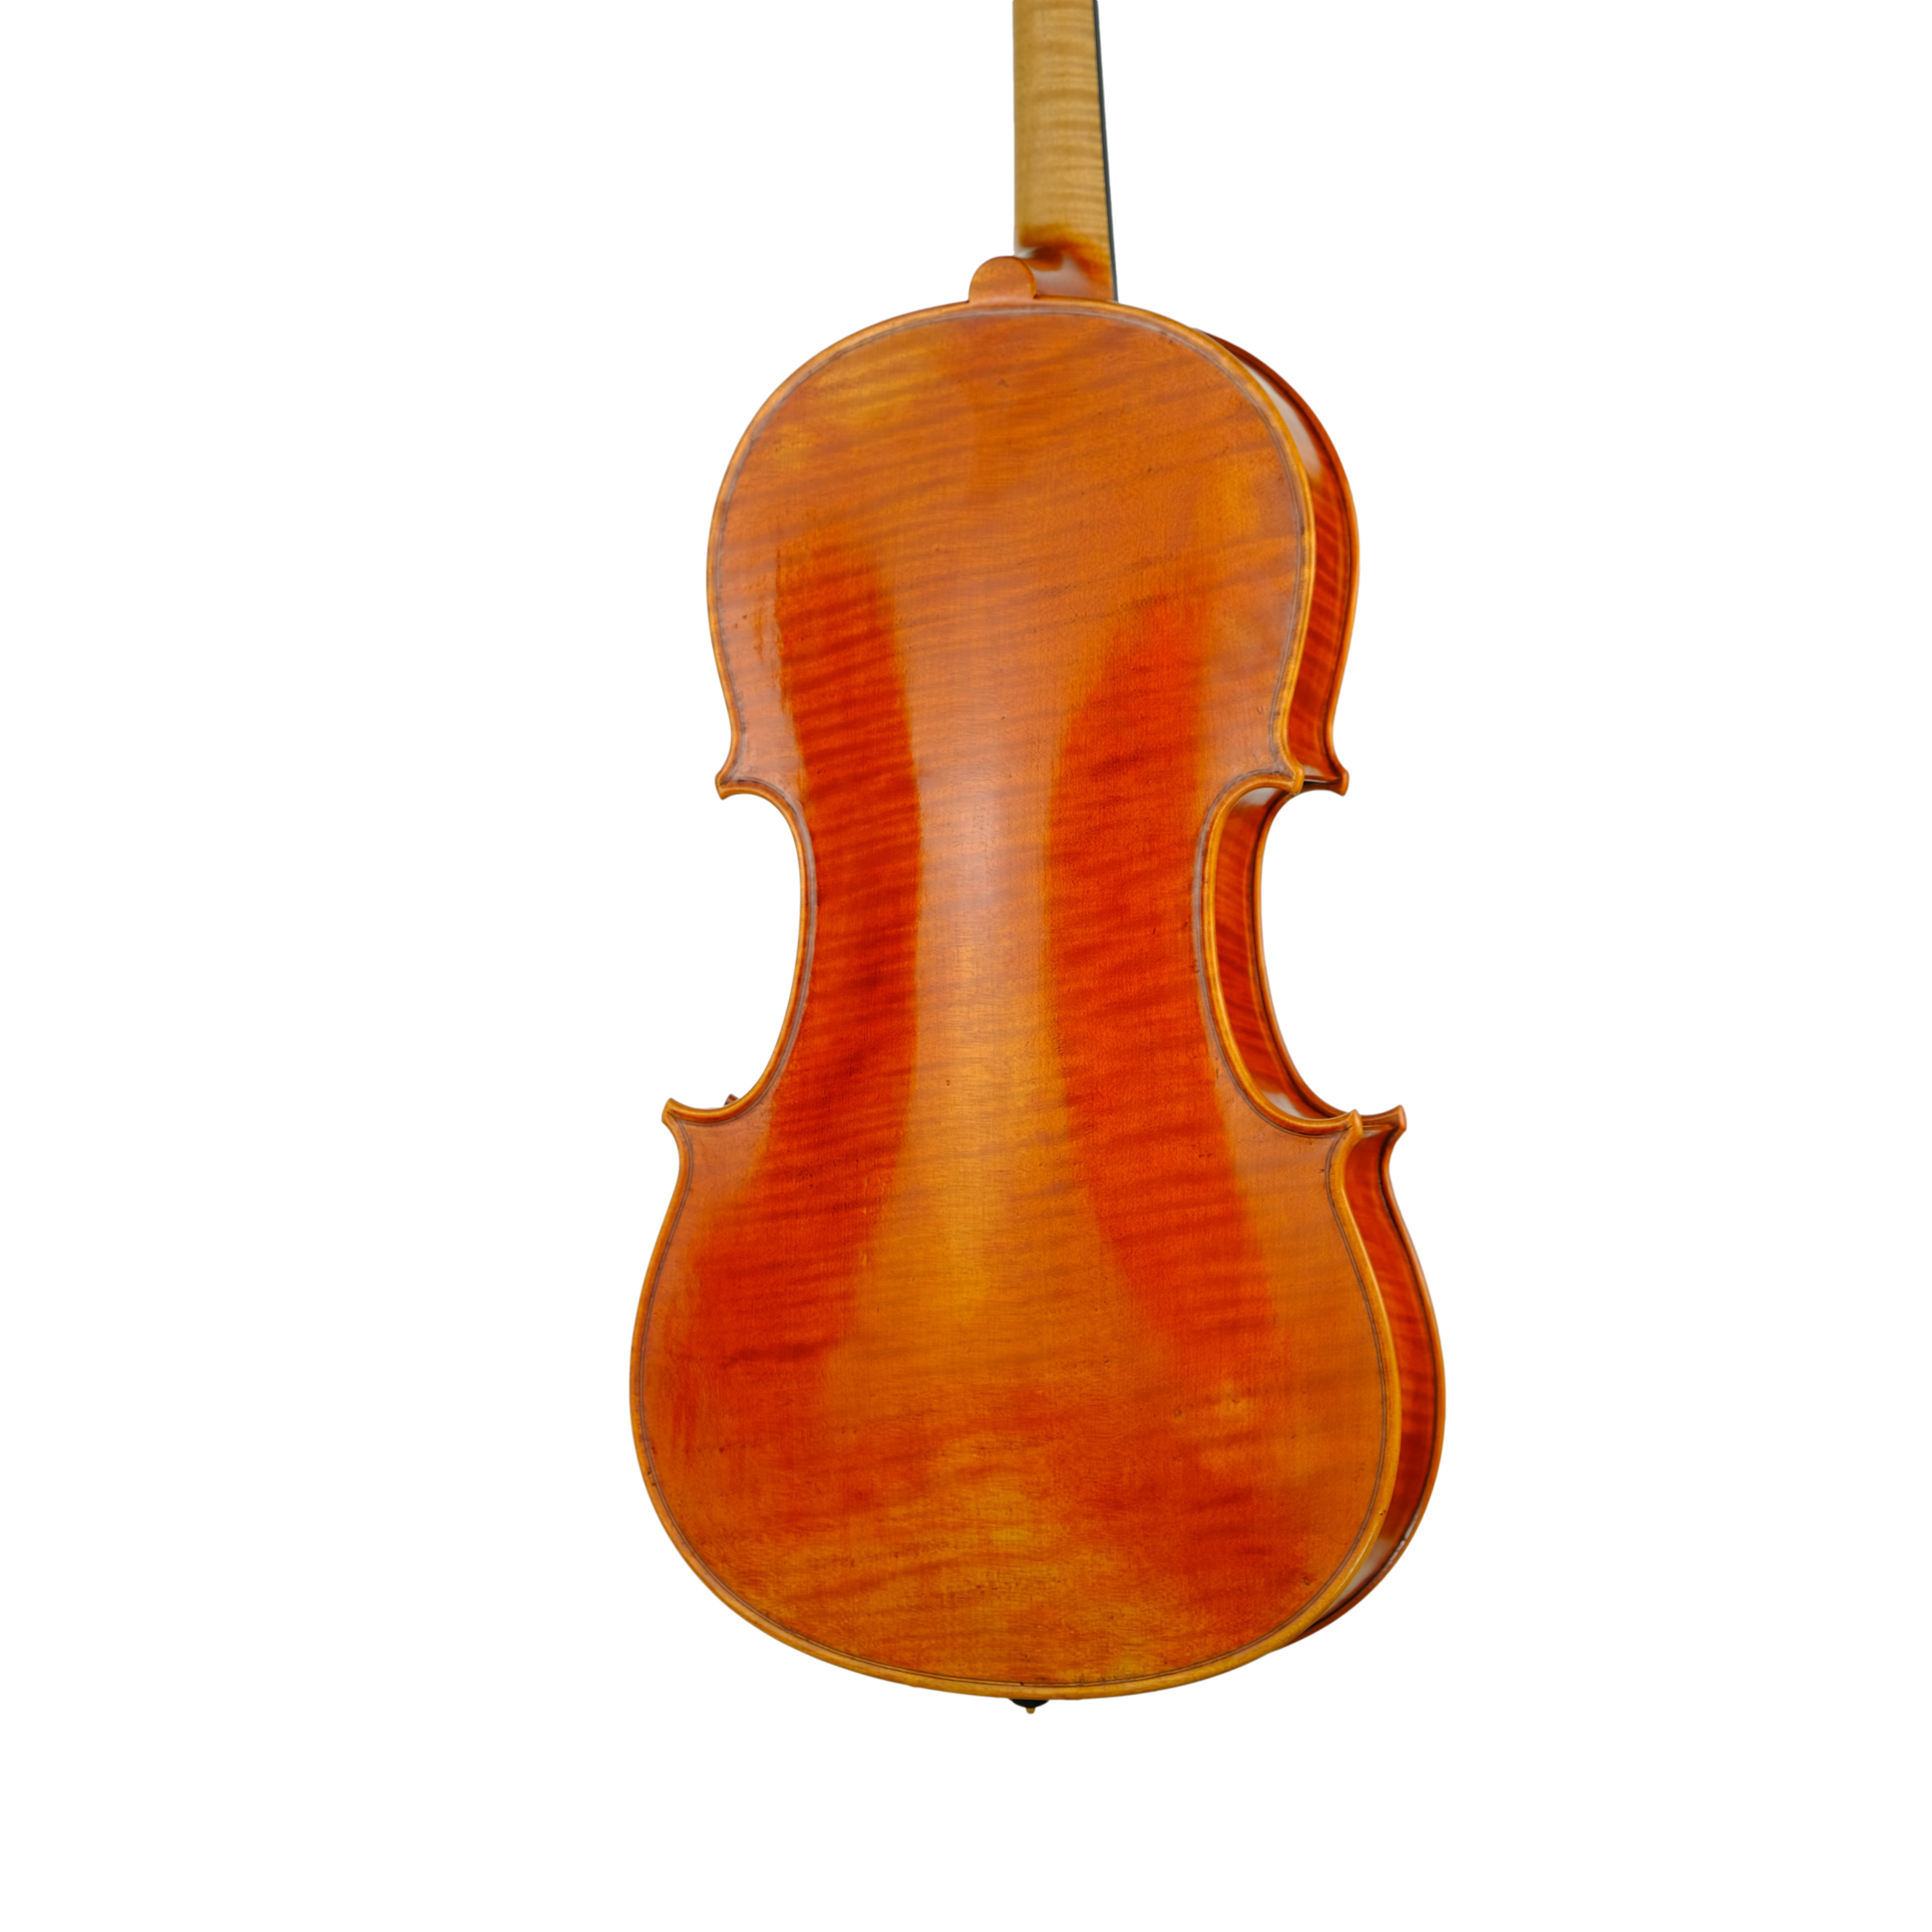 Viola 41,5cm - Edgar Russ, Copy of Mantegazza, Cremona 2020